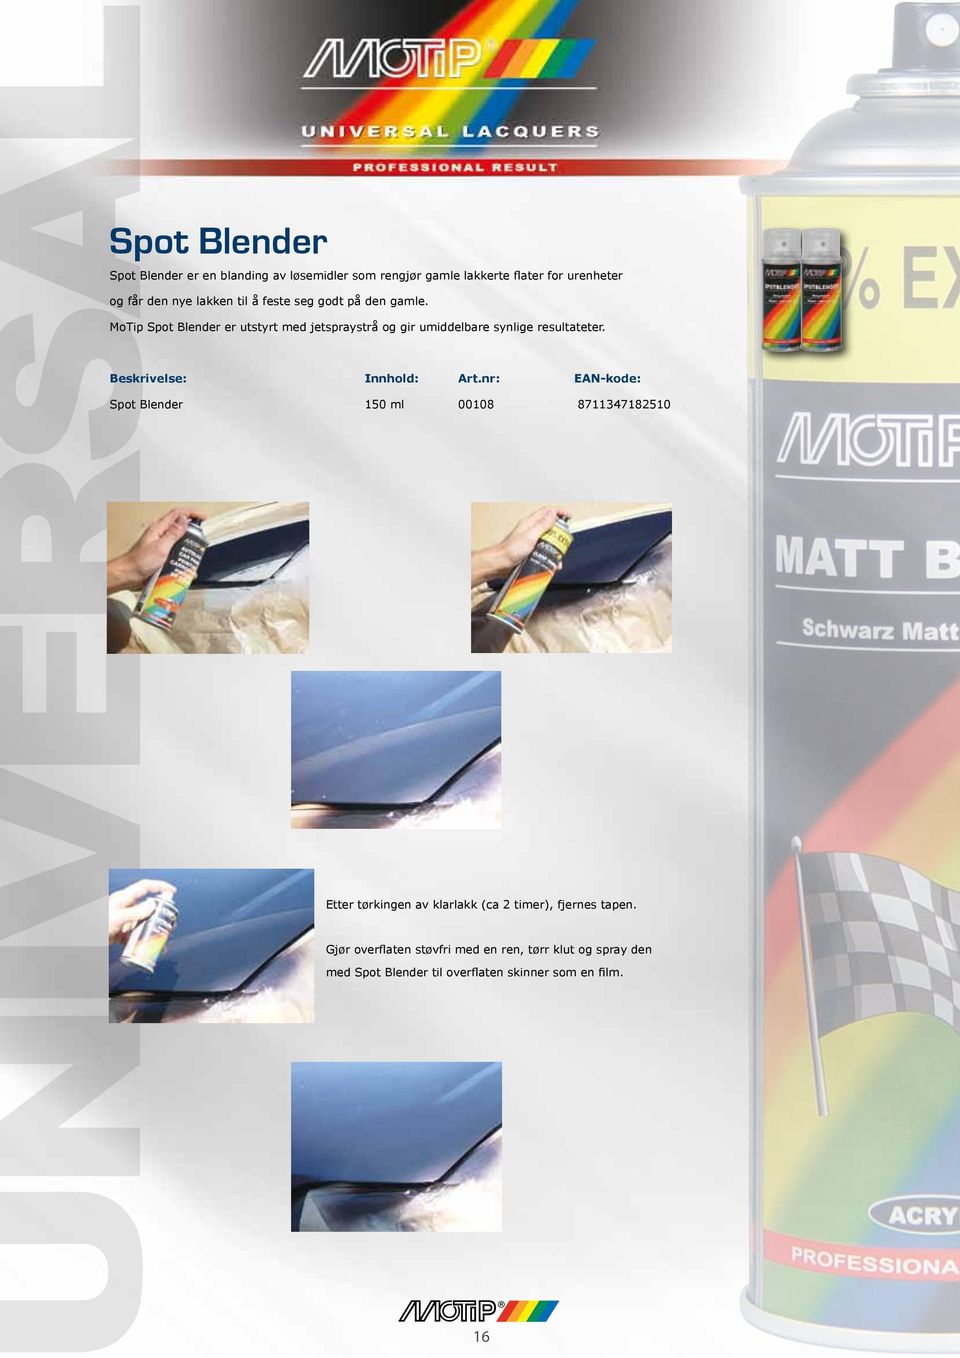 MoTip Spot Blender er utstyrt med jetspraystrå og gir umiddelbare synlige resultateter. Beskrivelse: Innhold: Art.